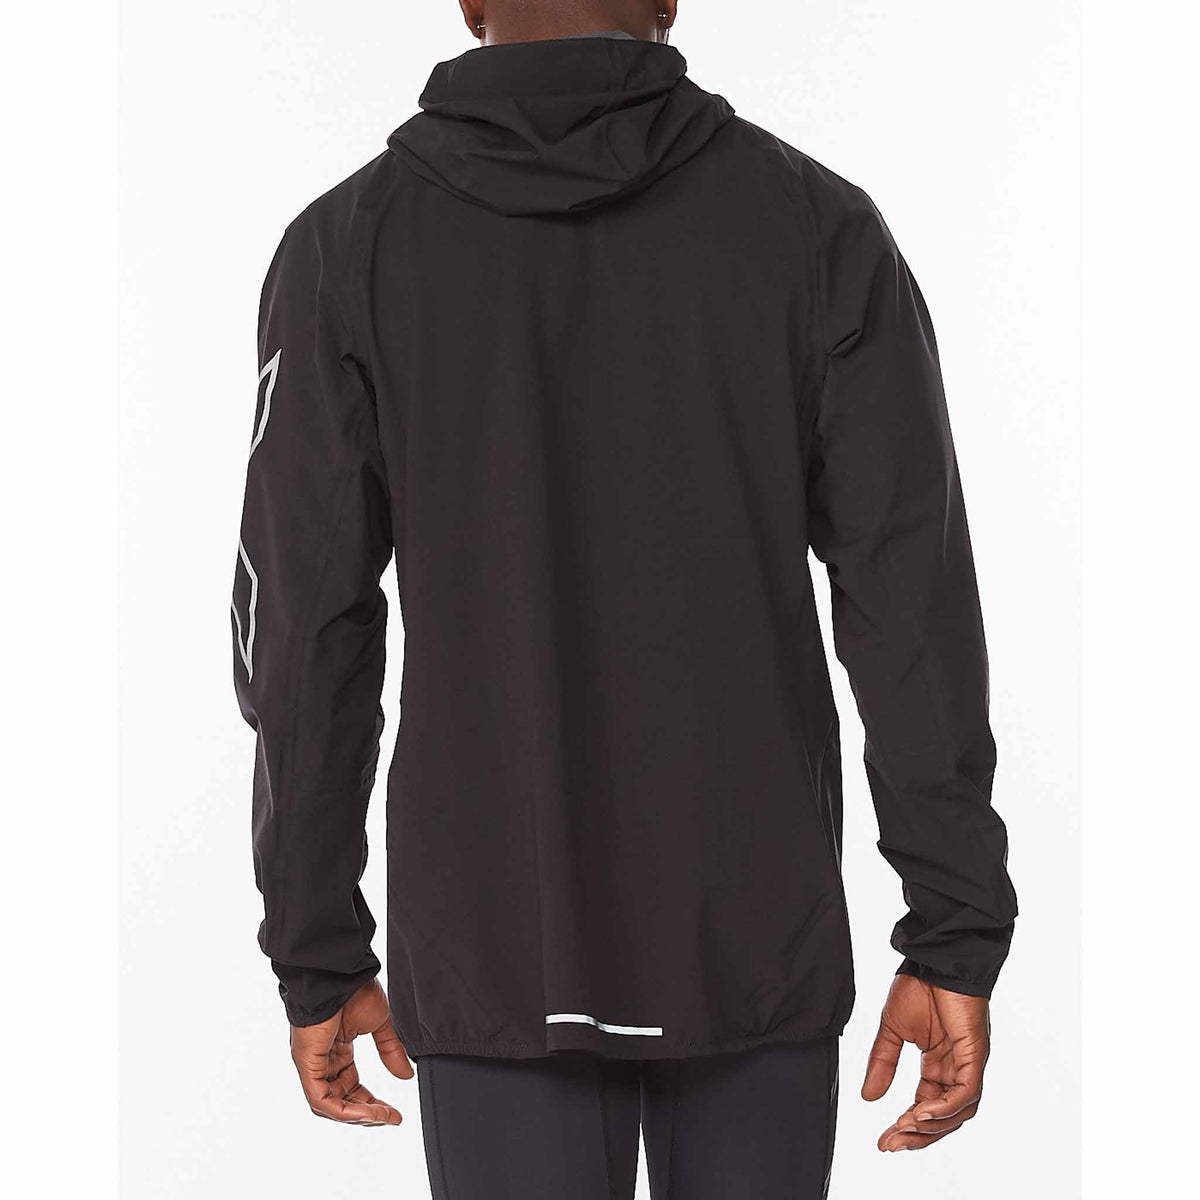 2XU manteau imperméable Light Speed WP Jacket pour homme Noir/Argent  vue de dos